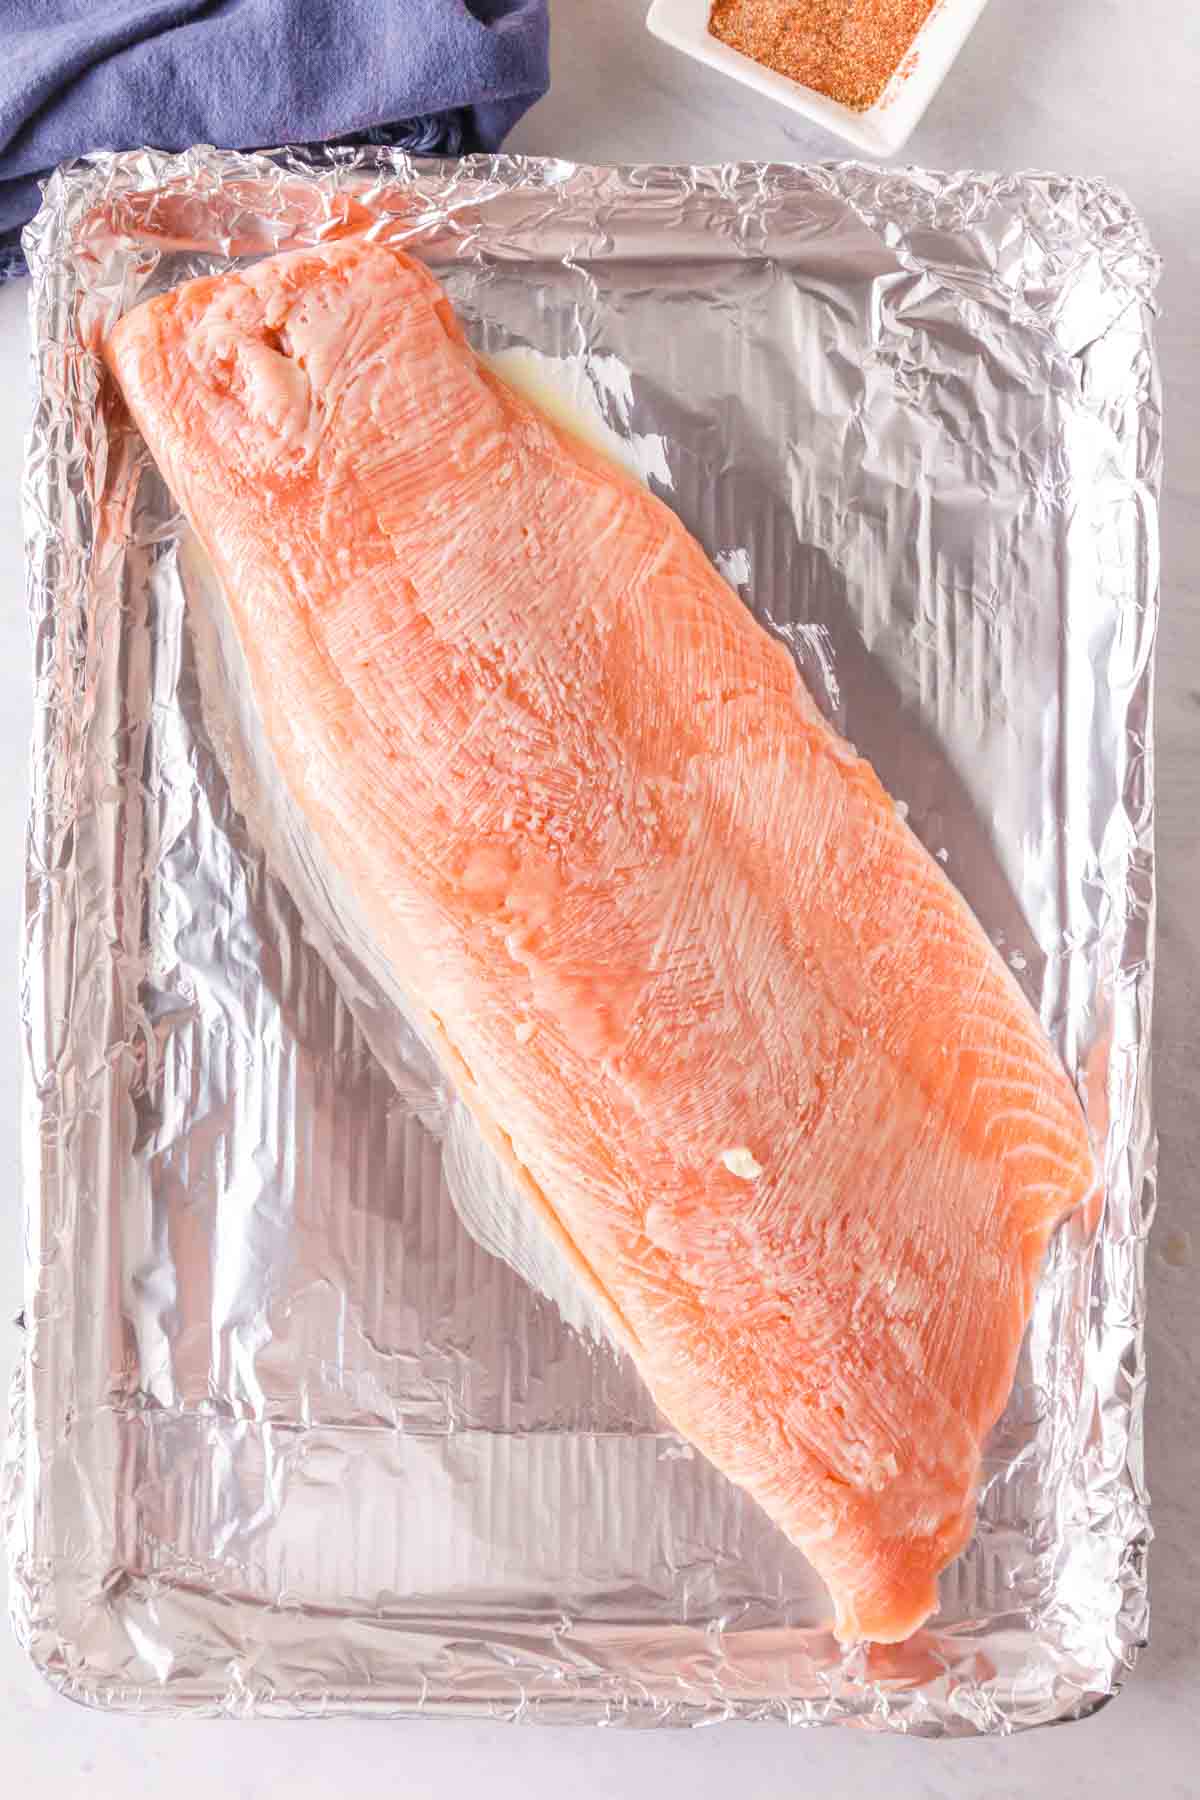 raw salmon filet